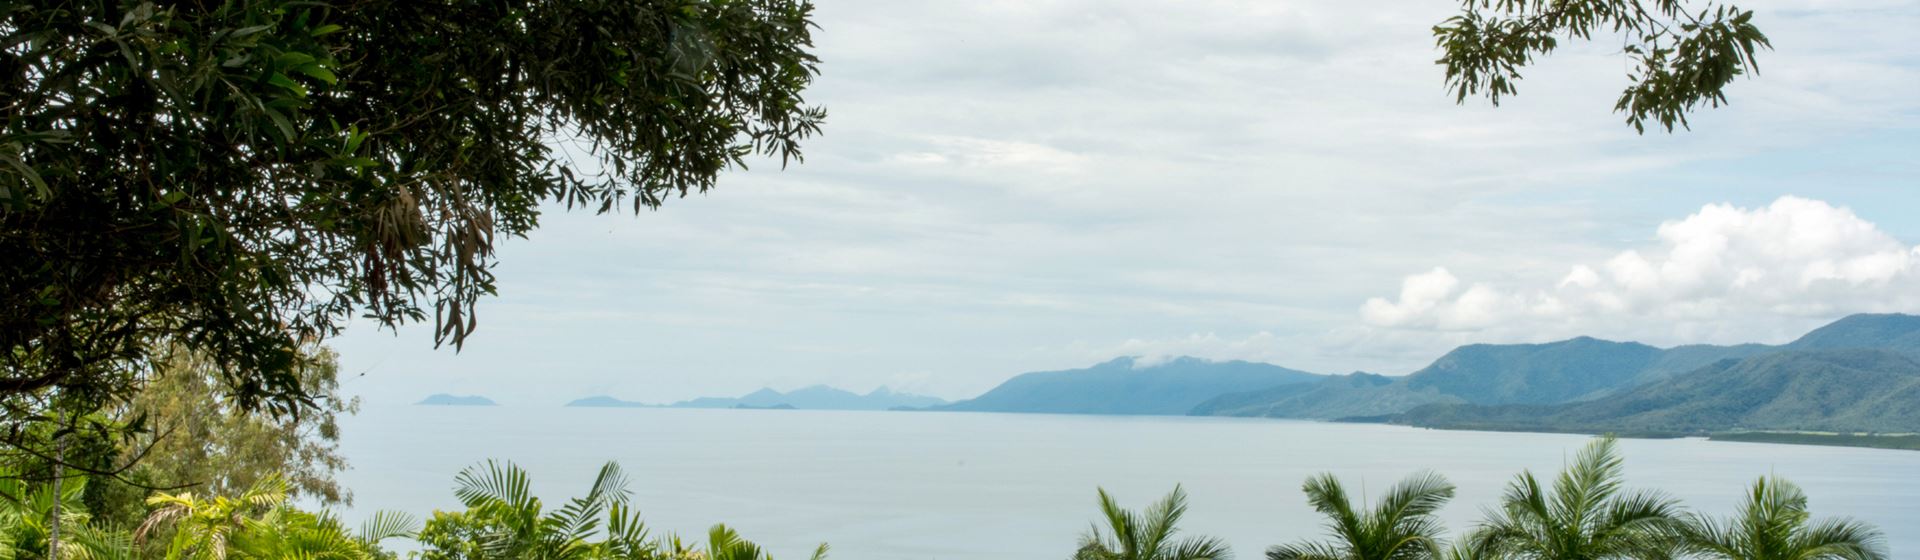 Vanuit een regenwoud zicht op de kustlijn van Port Douglas in Australië. Bergen in de verte en een grijze lucht.